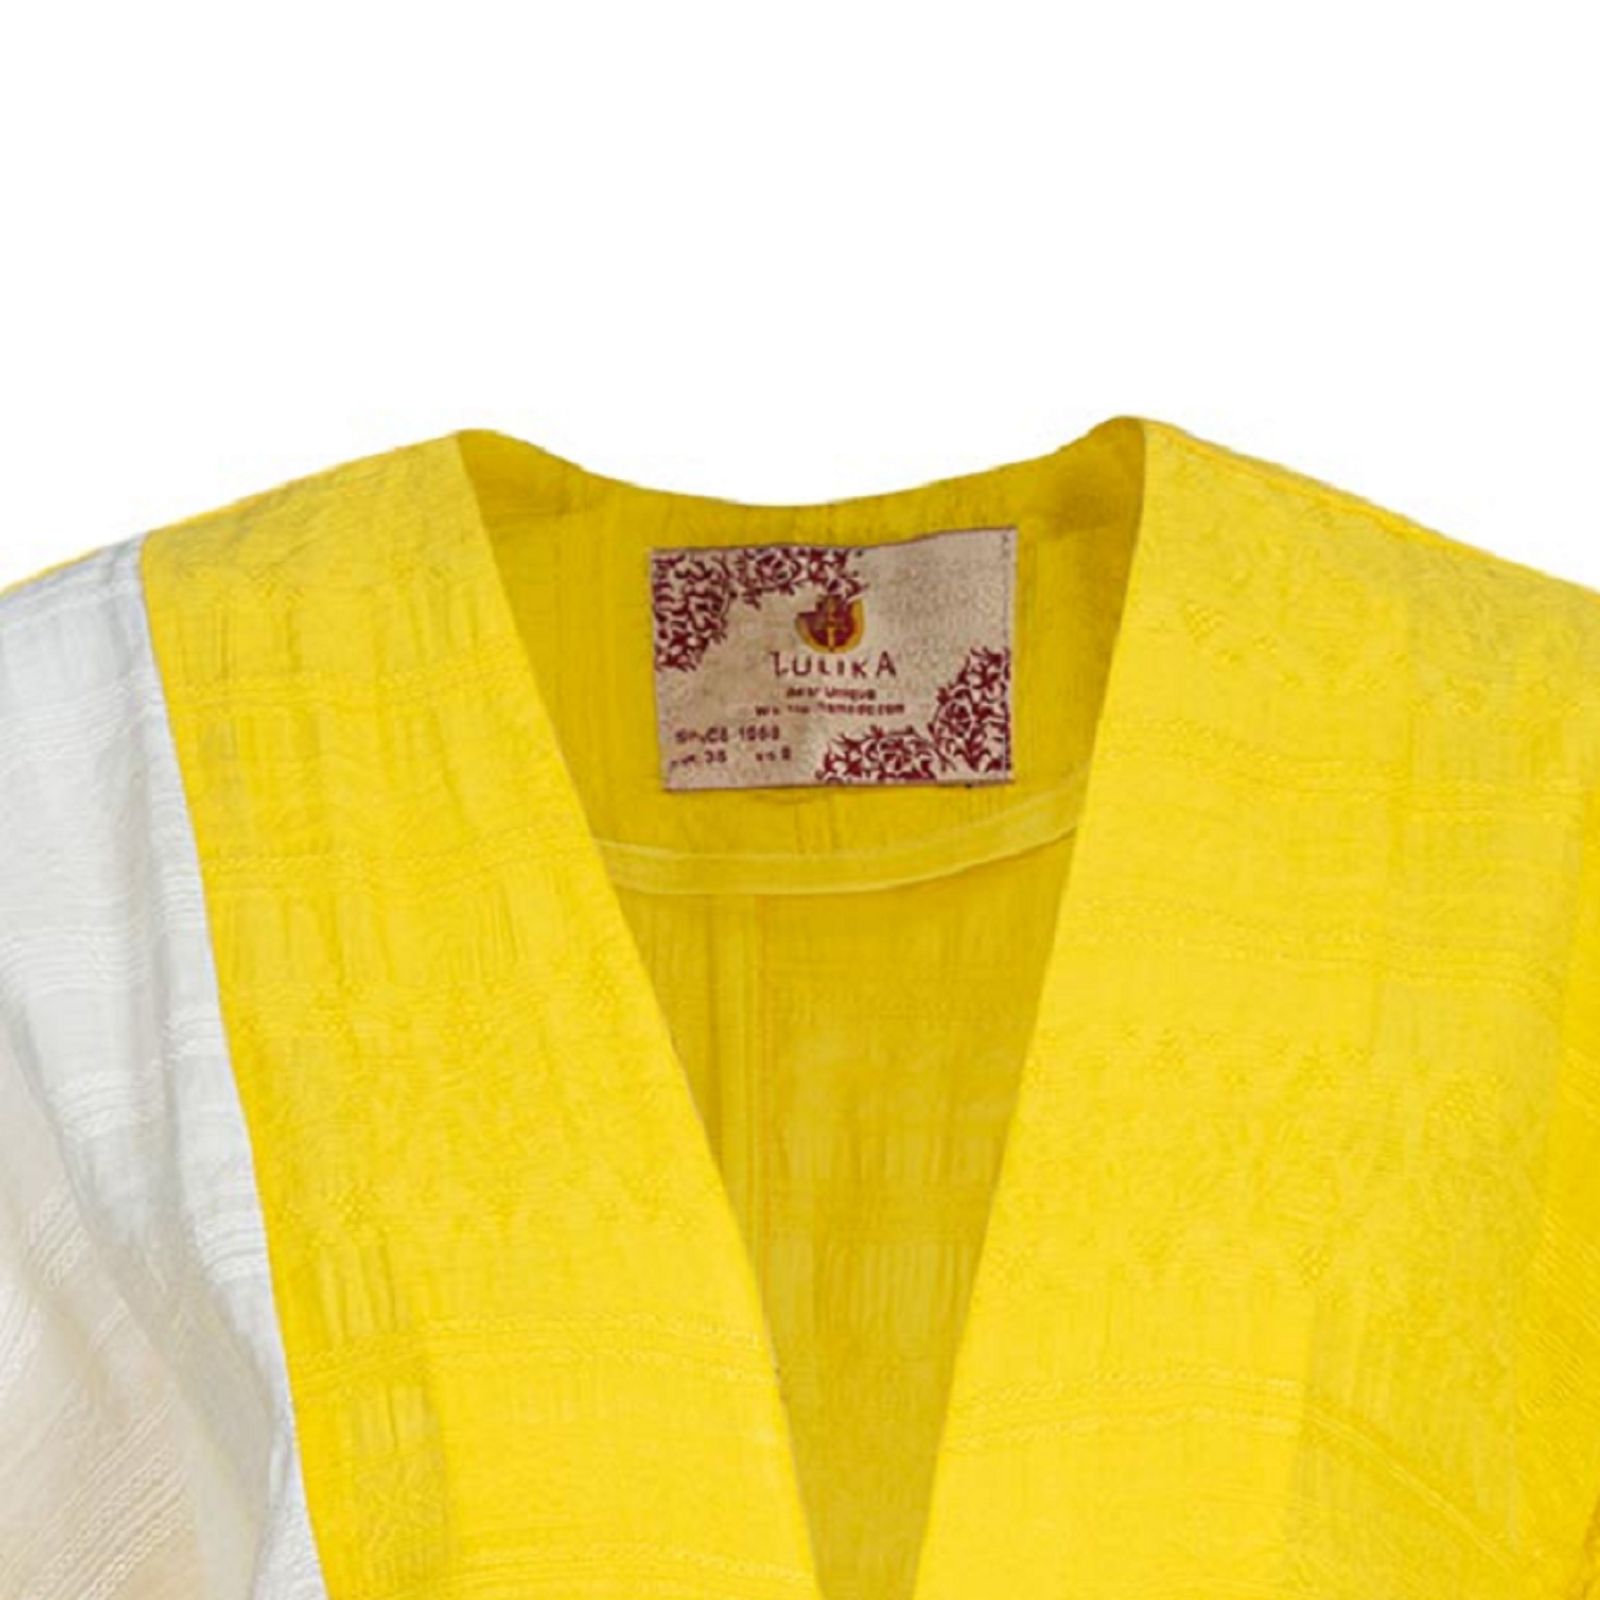 مانتو زنانه تولیکا مدل جلوباز کد 166175 رنگ زرد -  - 4